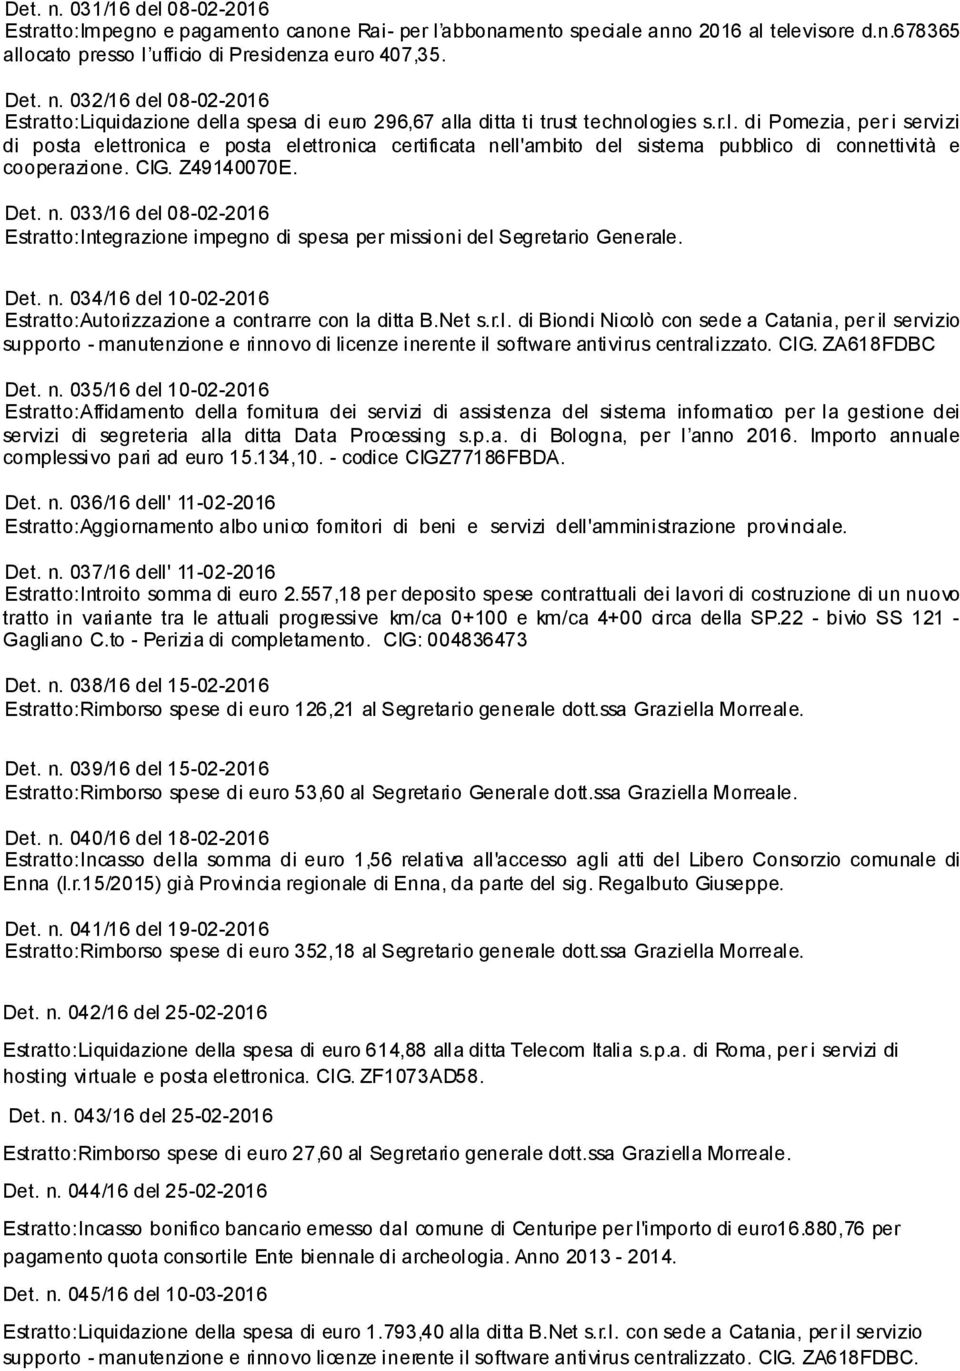 Det. n. 034/16 del 10-02-2016 Estratto:Autorizzazione a contrarre con la ditta B.Net s.r.l. di Biondi Nicolò con sede a Catania, per il servizio supporto - manutenzione e rinnovo di licenze inerente il software antivirus centralizzato.